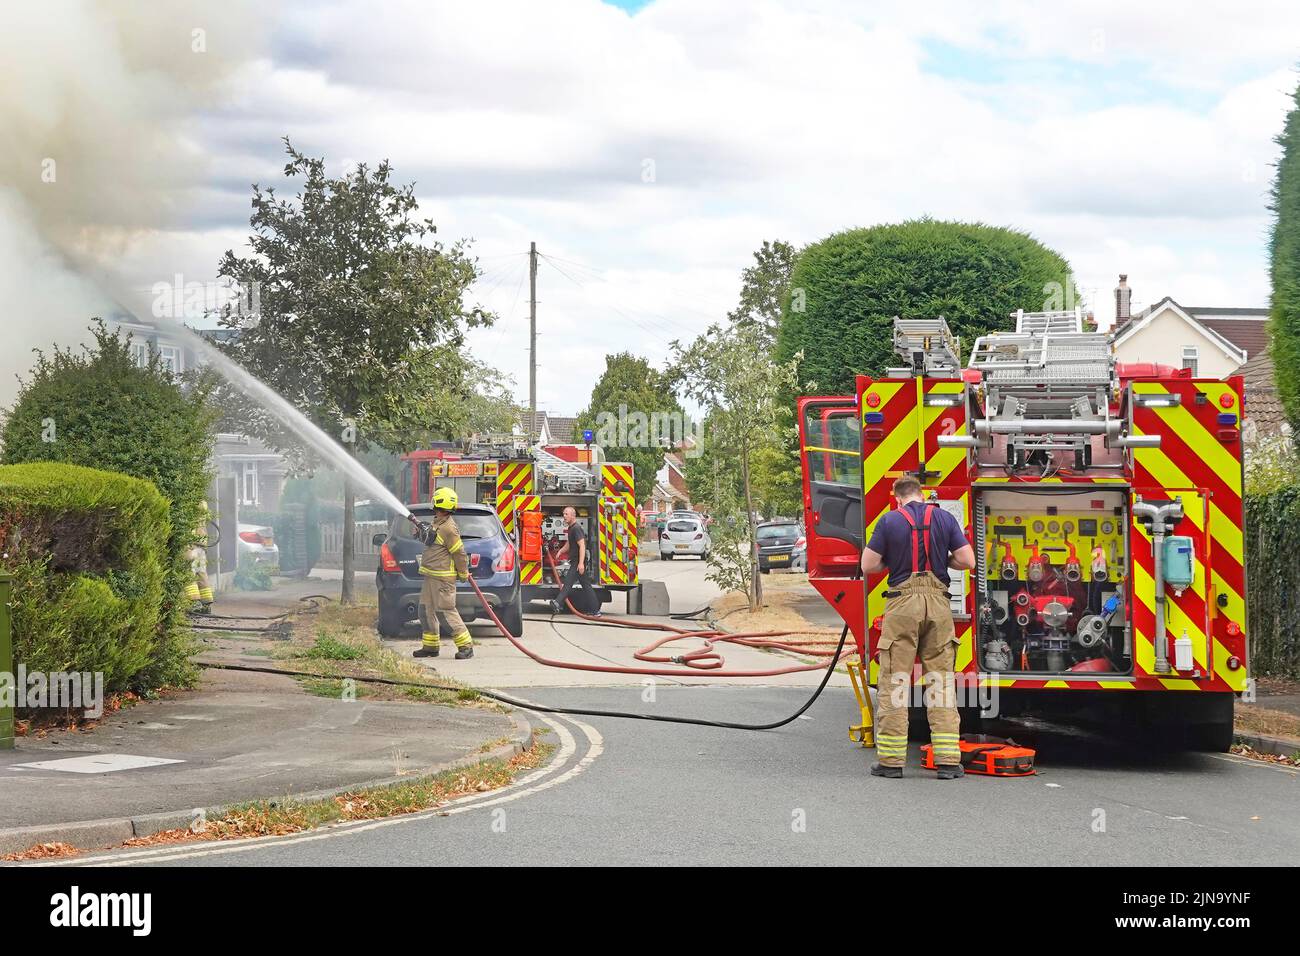 Essex bomberos y servicios de rescate bomberos rociando chorro de agua en casa bomberos bomberos y bomberos en la calle residencial escena Inglaterra Reino Unido Foto de stock